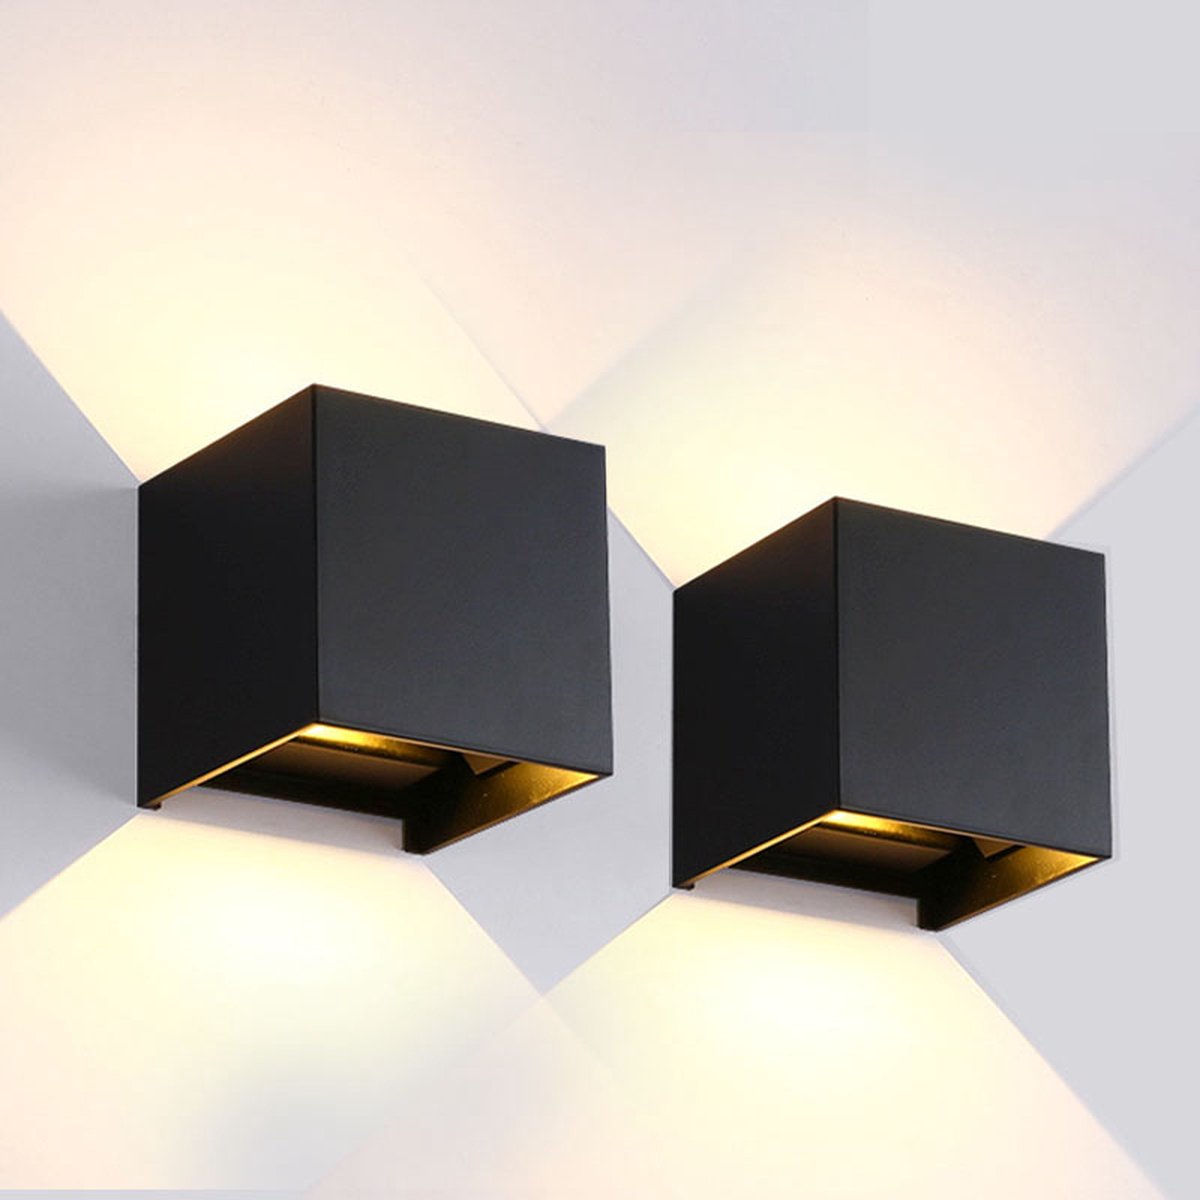 Wandlamp zwart binnen en buiten – Set van 2 - 12W – Kubuslamp industrieel – Buitenlamp - Waterdichte LED-verlichting - Energiezuinig en roestvrij